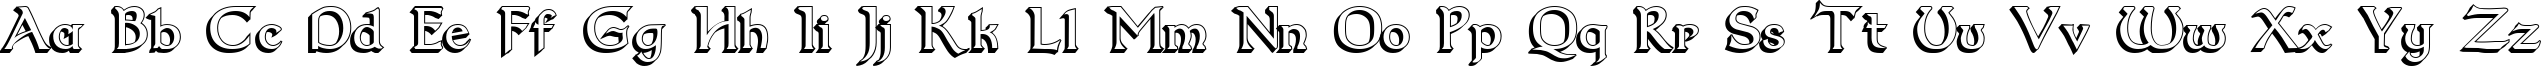 Пример написания английского алфавита шрифтом Dumbledor 2 3D